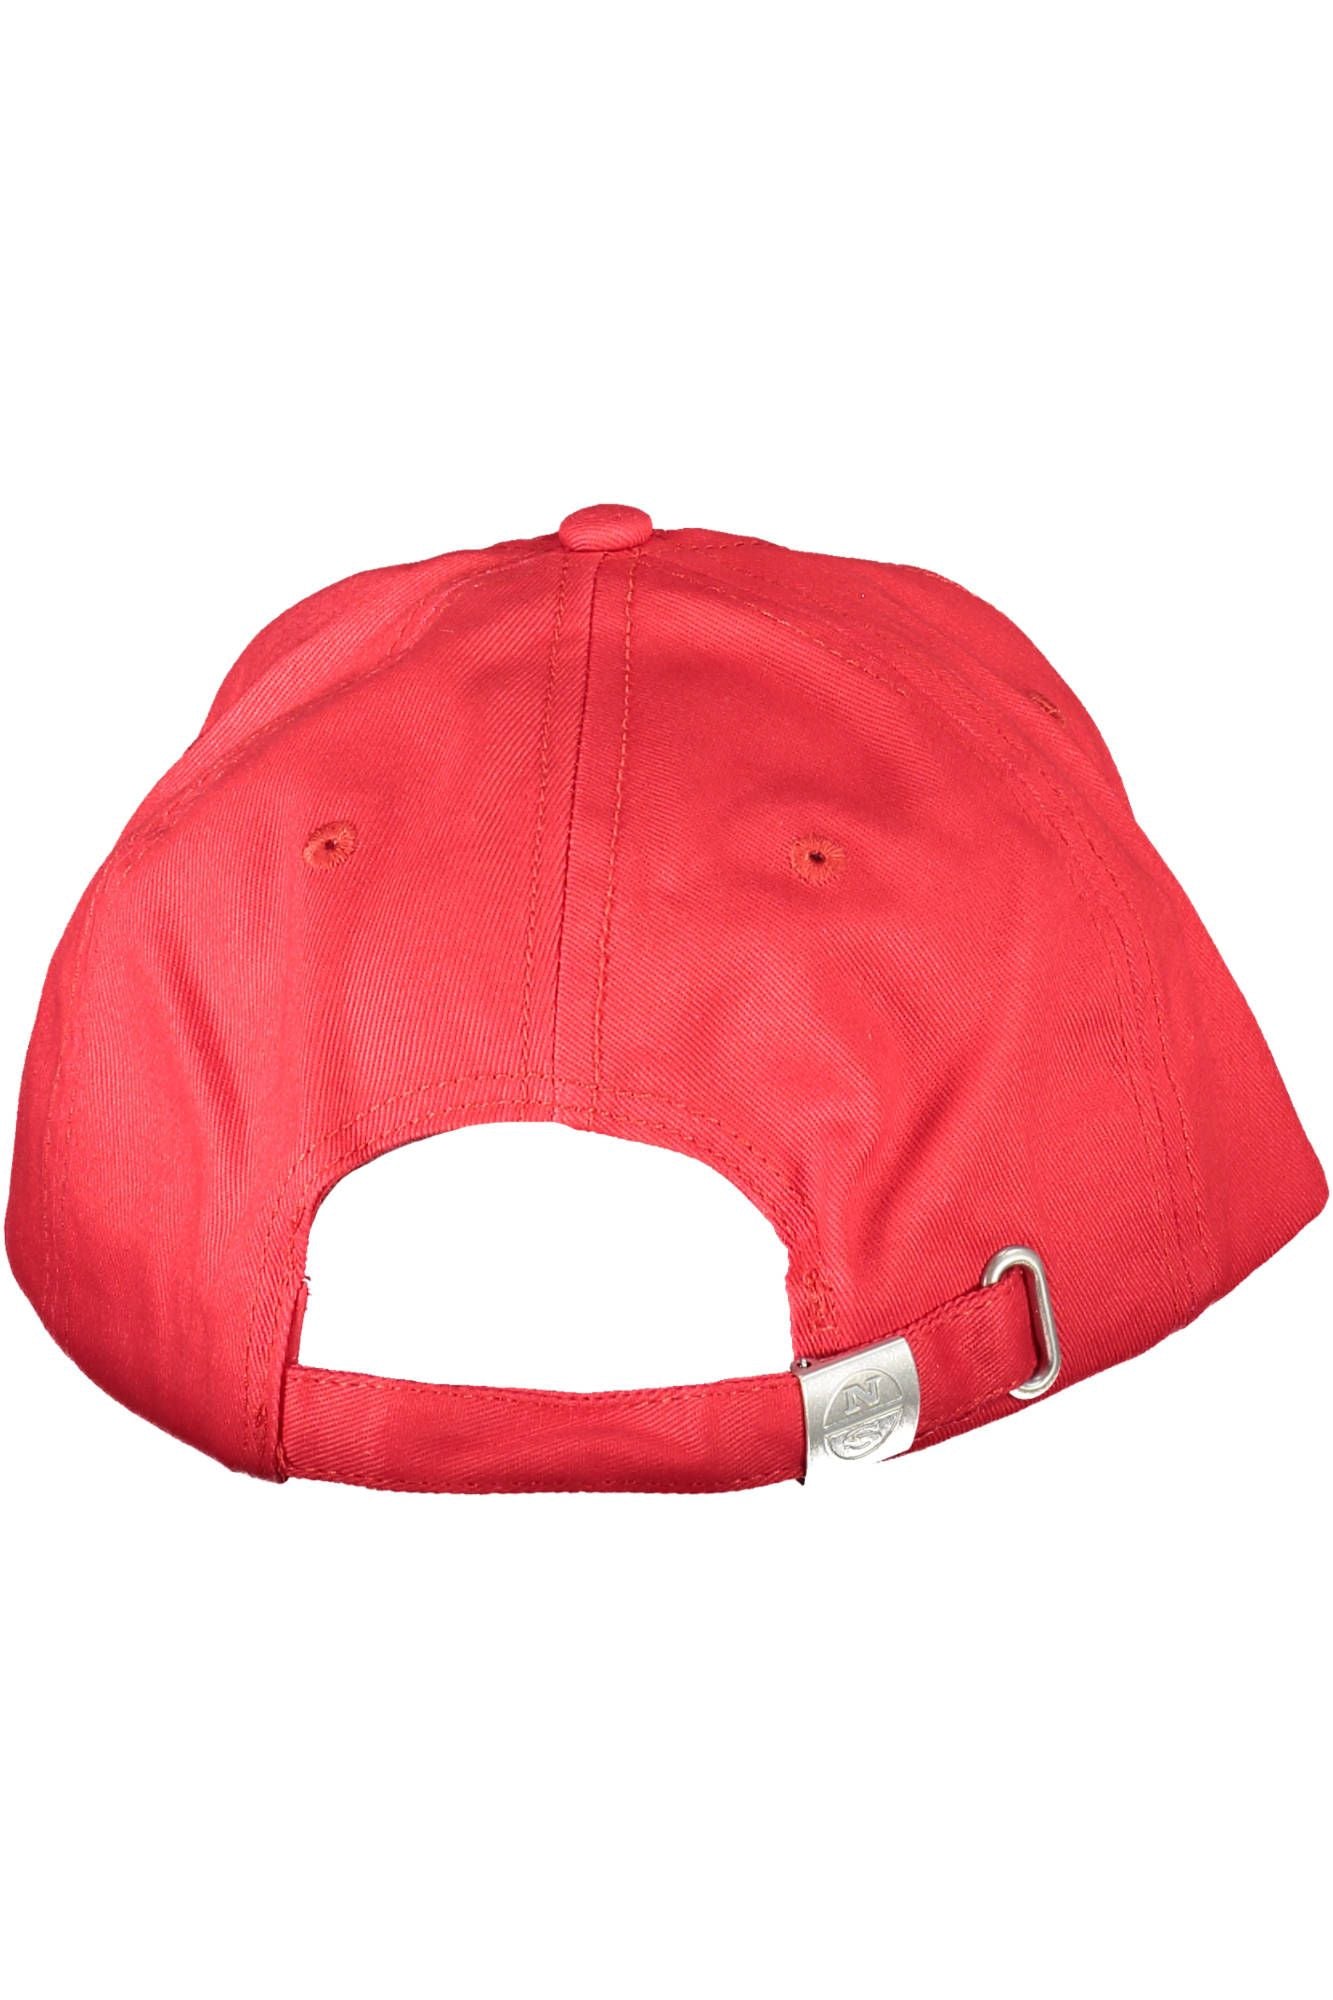 North Sails Elegant Red Cotton Cap with Logo Visor